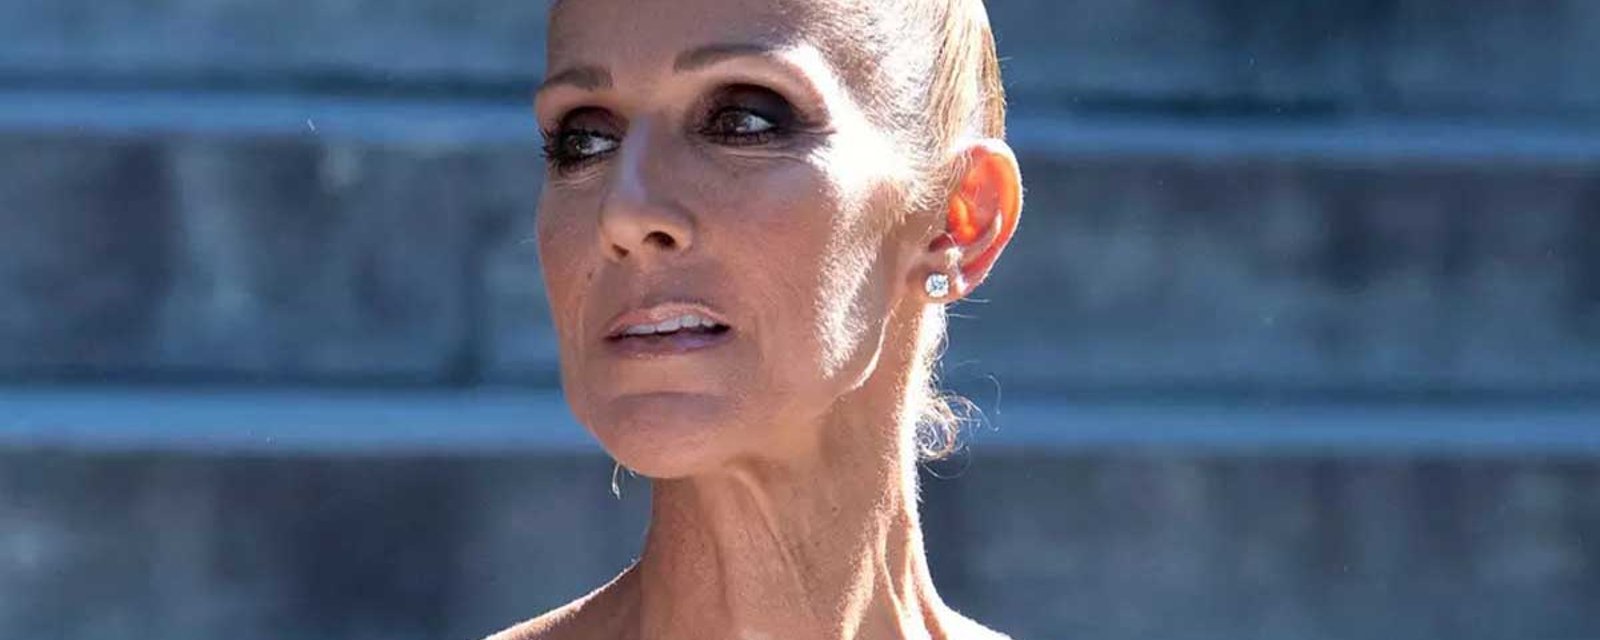 La biographie de Céline Dion dévoile des détails sur son état de santé et les nouvelles ne sont pas bonnes